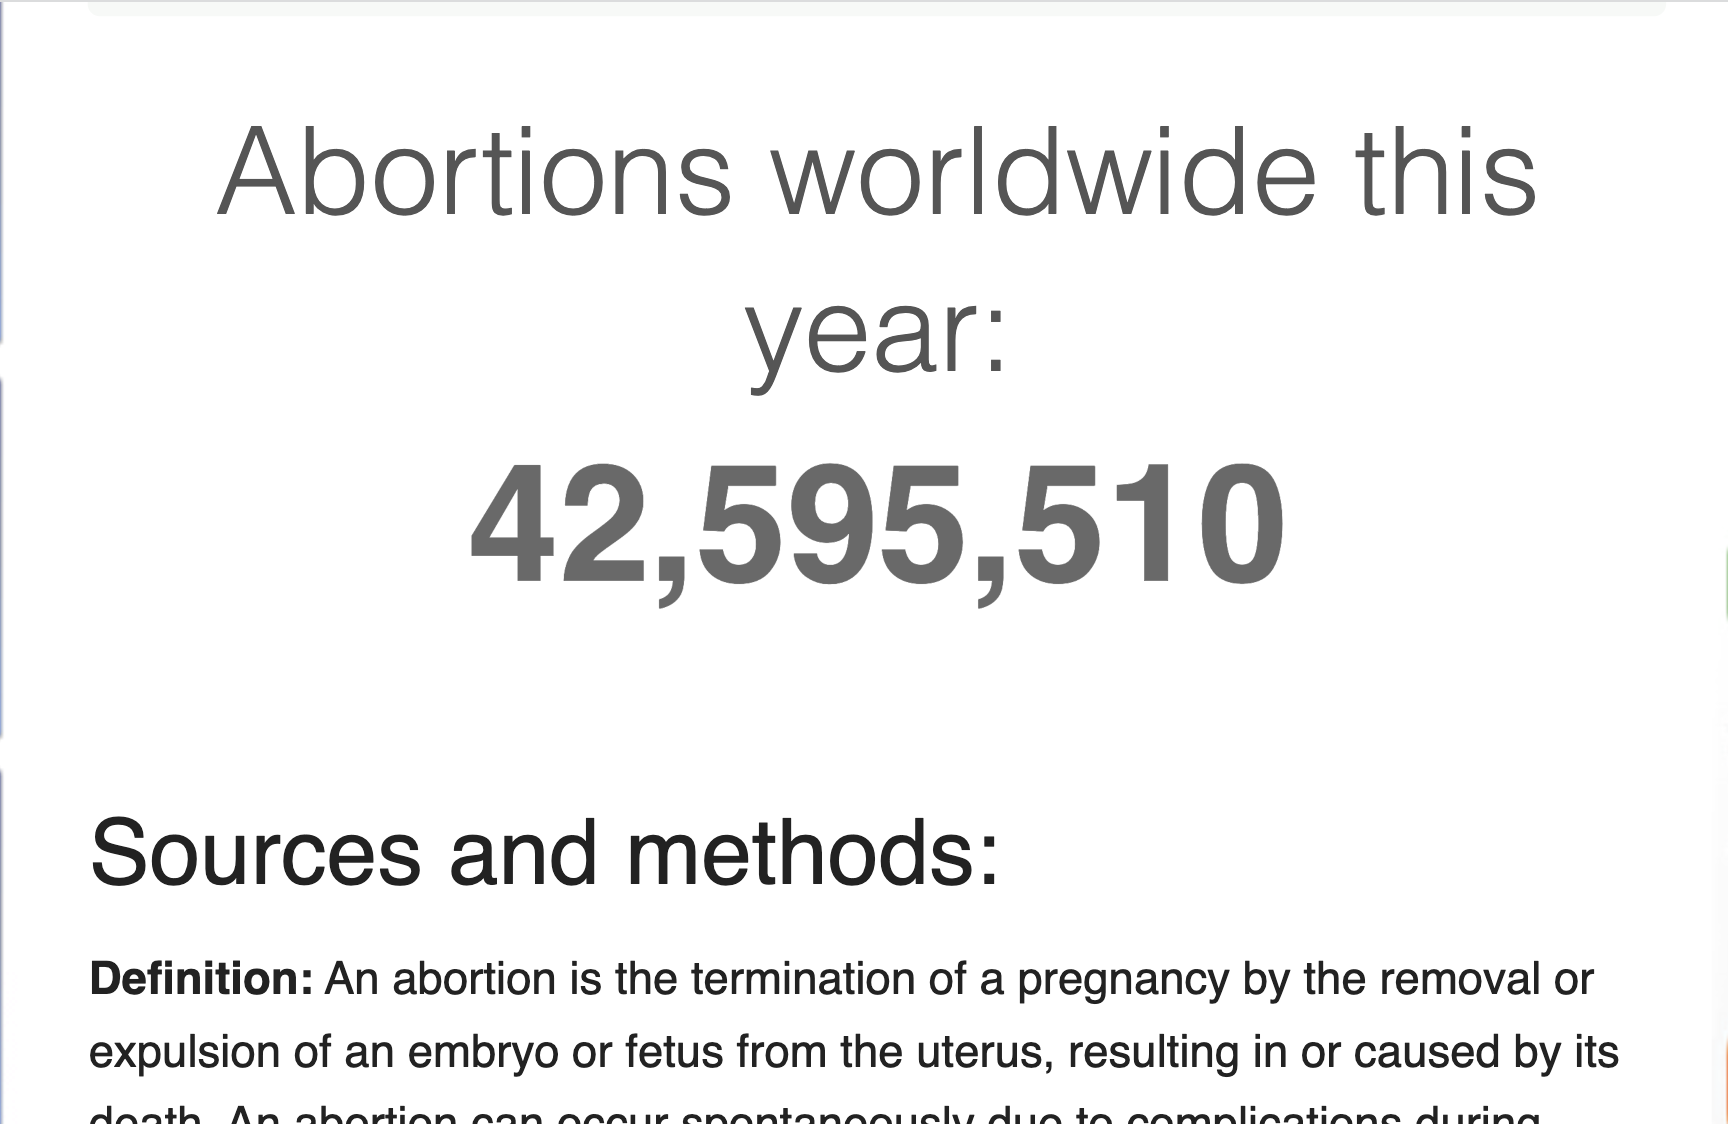 worldometer - aborti 2021